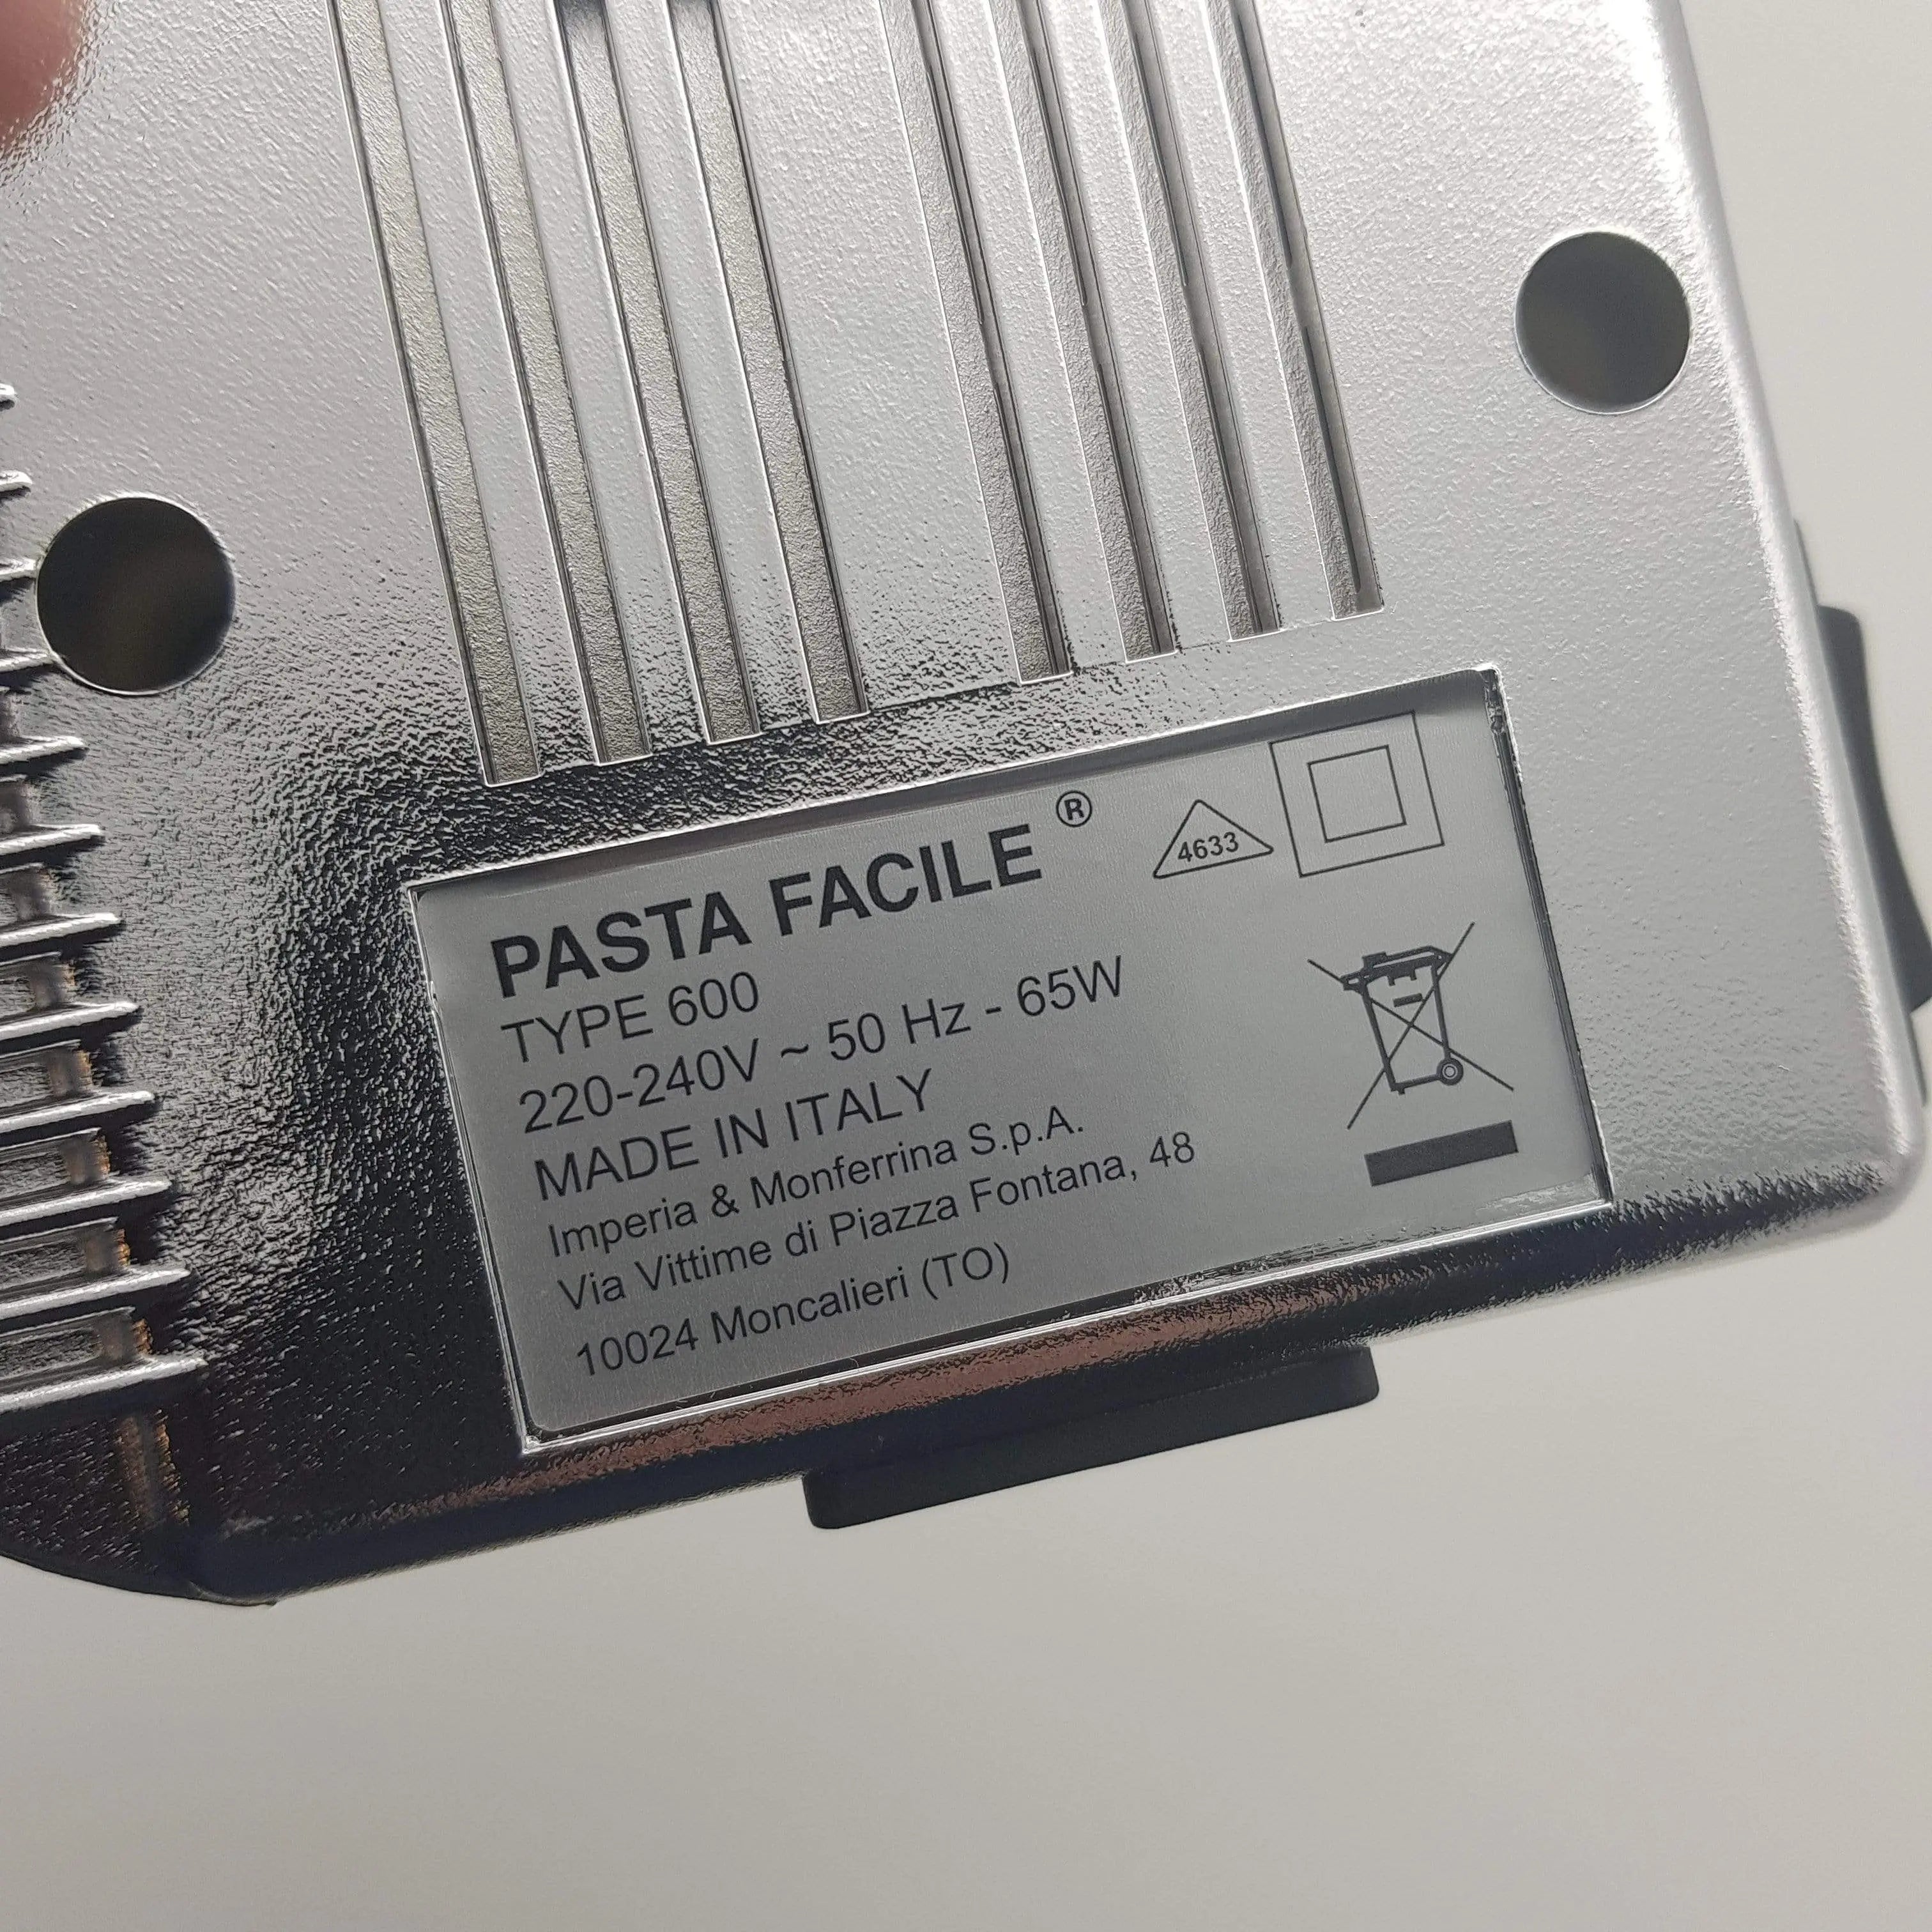 IMPERIA Pasta Facile 600 Motore Elettrico • ORTU Elettrodomestici